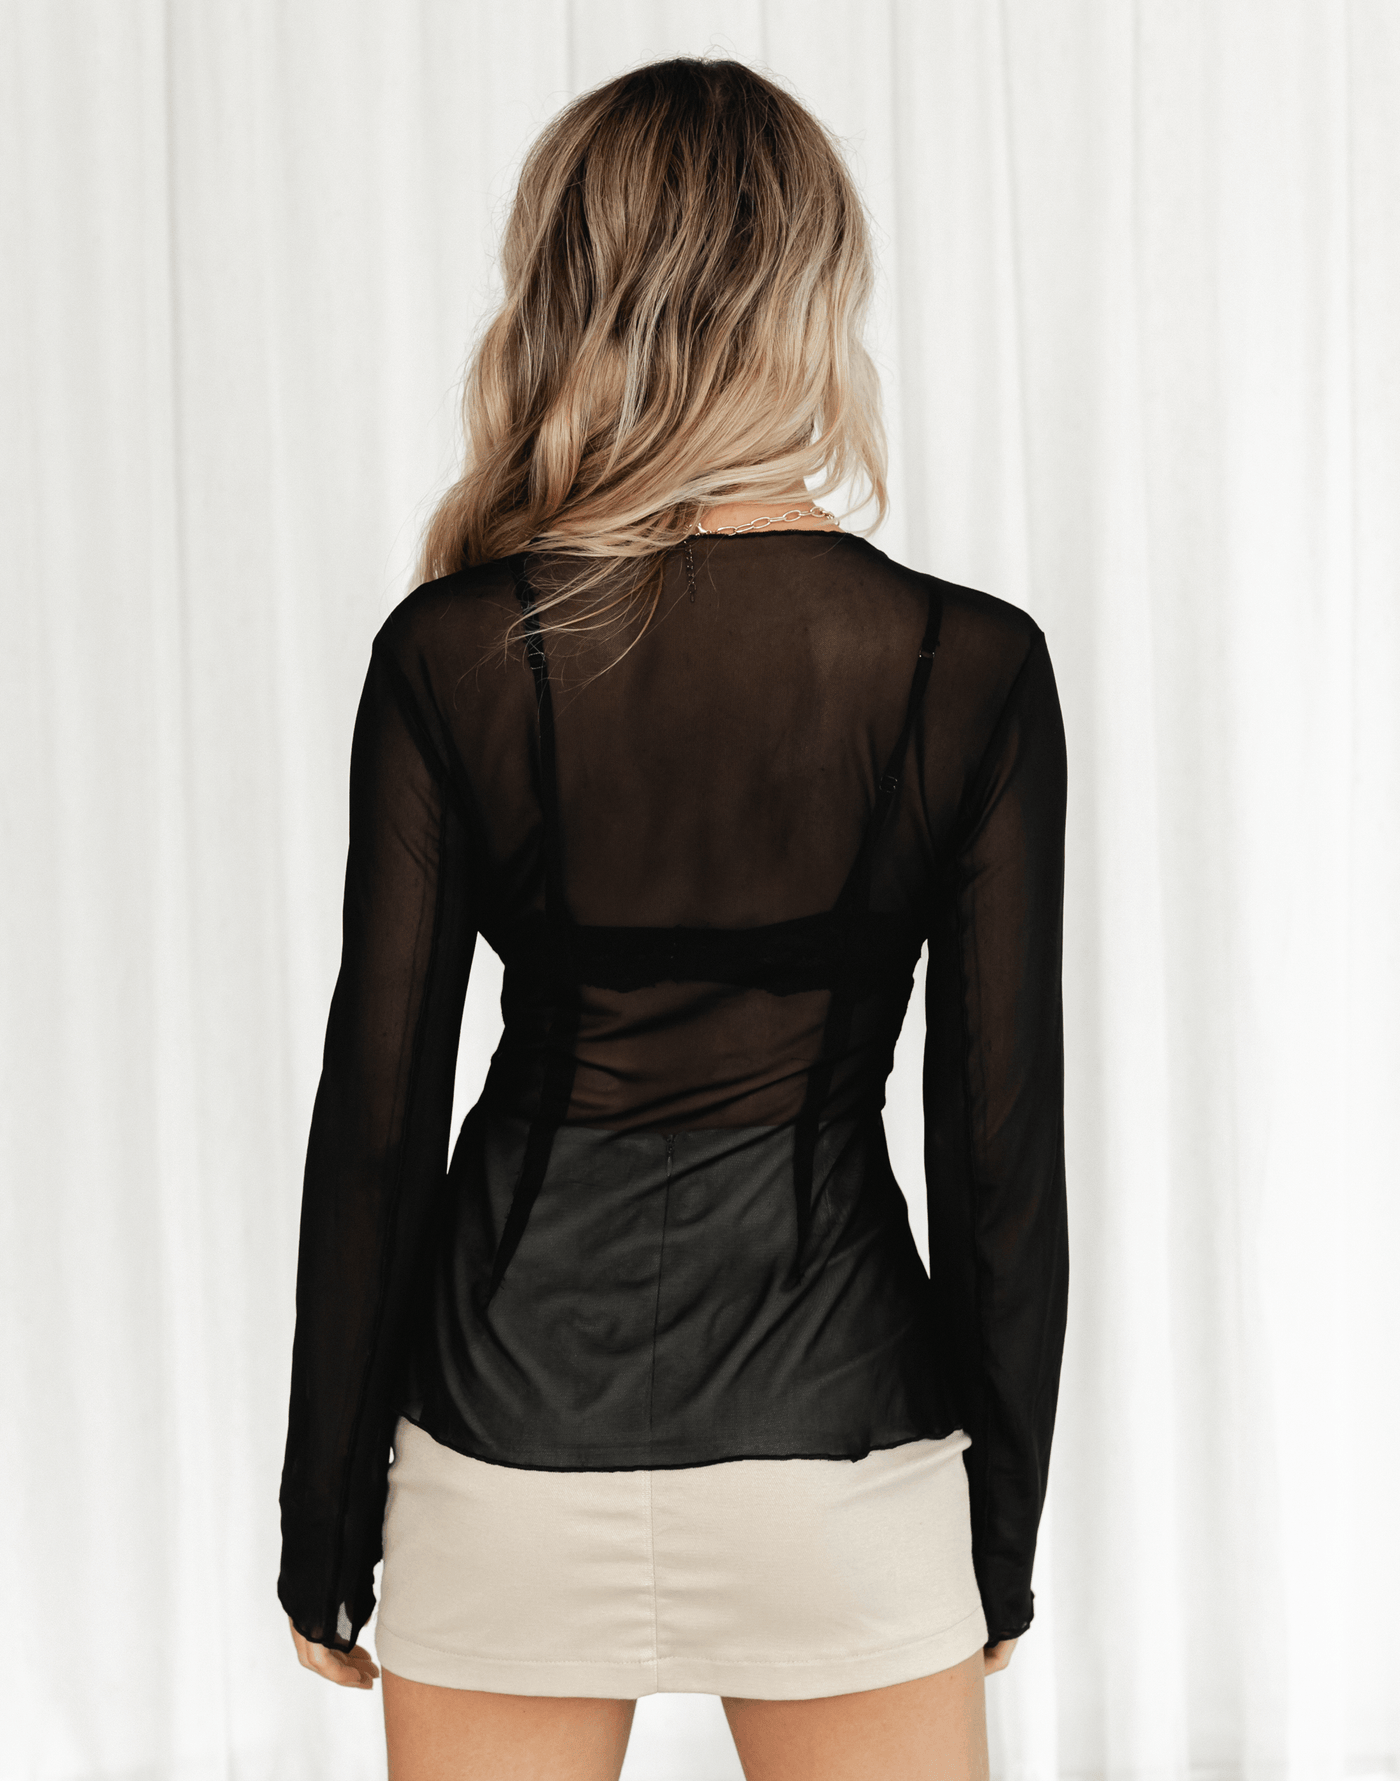 Lylah Mesh Shirt (Black) - Sheer Mesh Long Sleeve Top - Women's Top - Charcoal Clothing